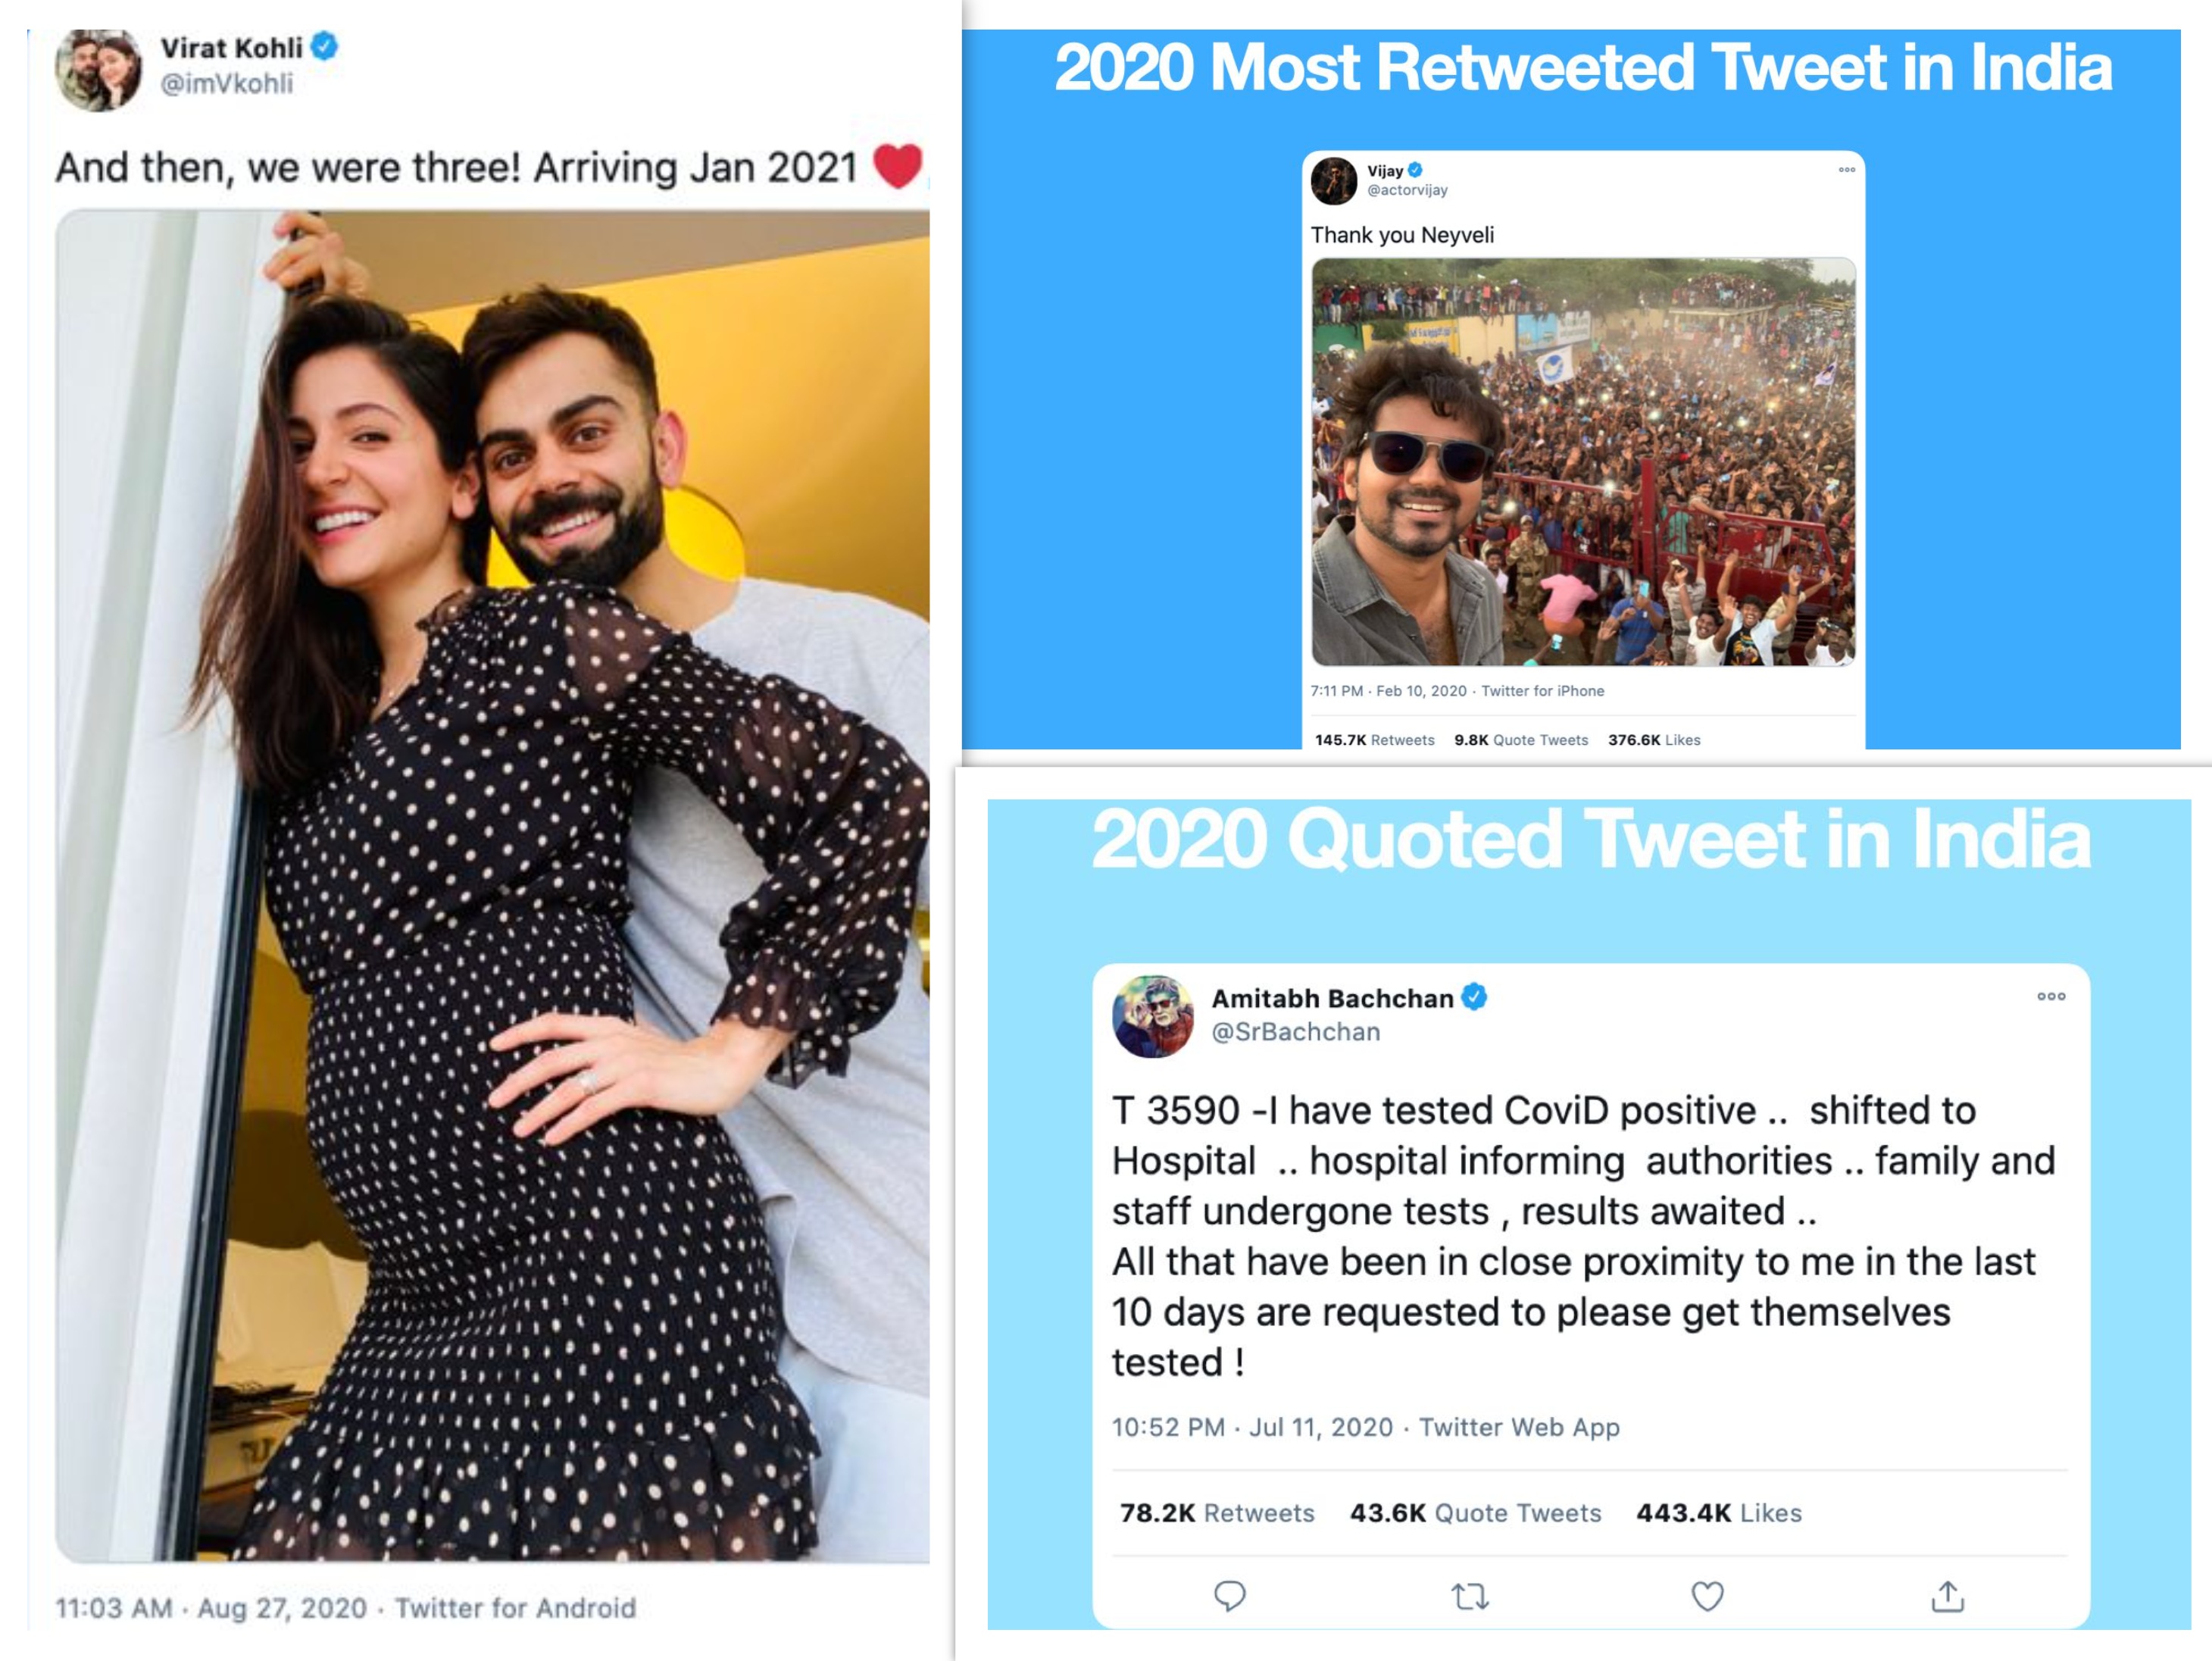 ट्विटर-2020: विराट-अनुष्का का प्रेग्नेंसी अनाउंसमेंट रहा 2020 का सबसे ज्यादा लाइक किया गया ट्वीट, सुशांत की आखिरी फिल्म भी लिस्ट में शामिल